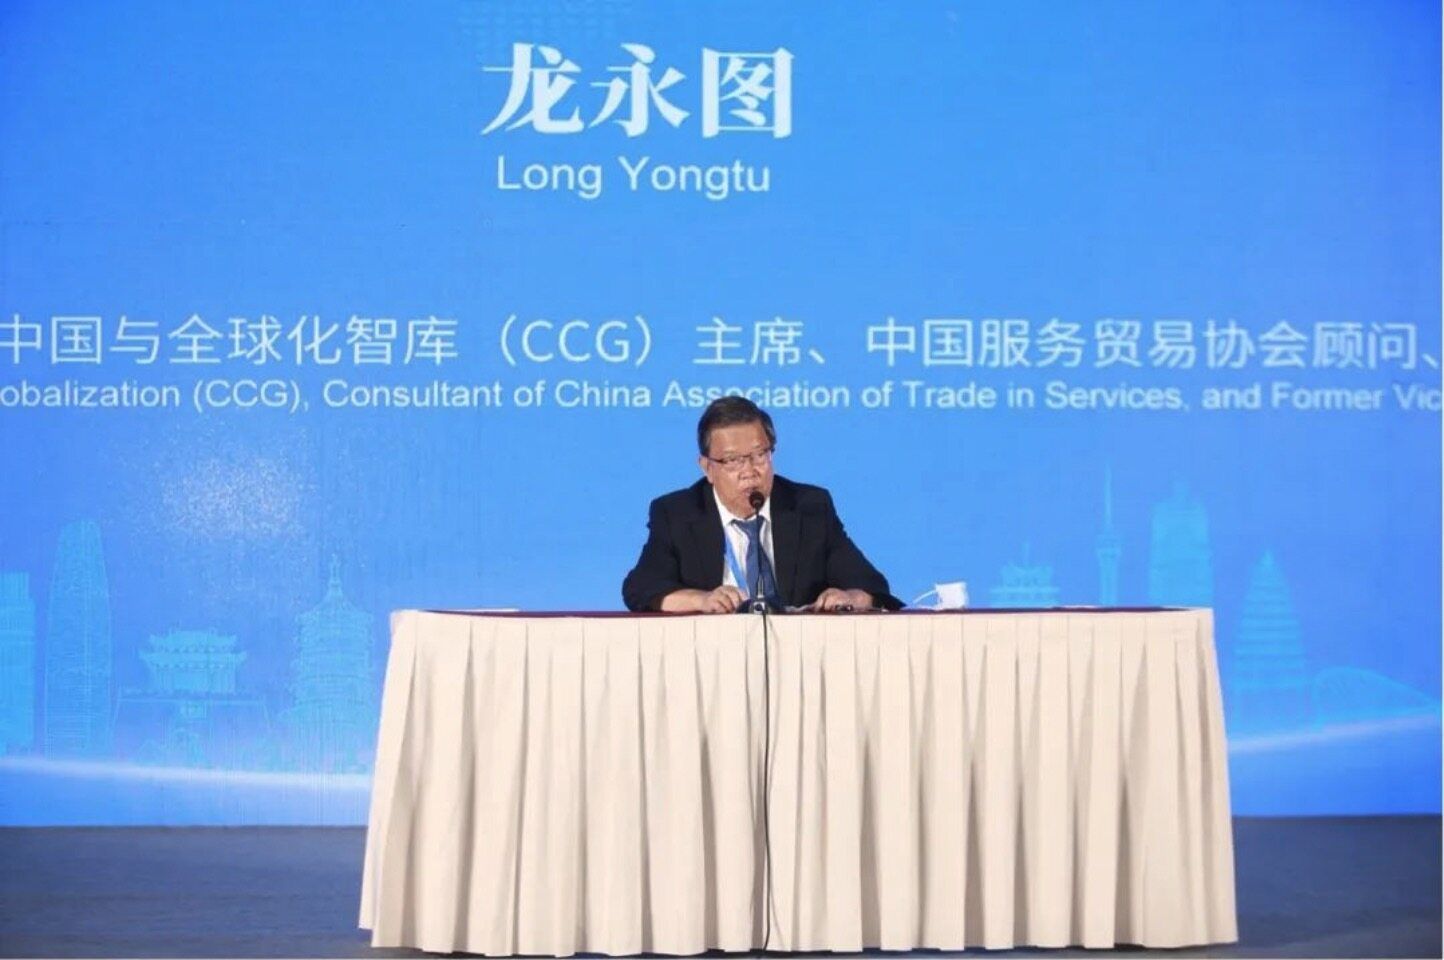 大龙网集团董事长冯剑峰参加中国跨境电商50人论坛并发表演讲  